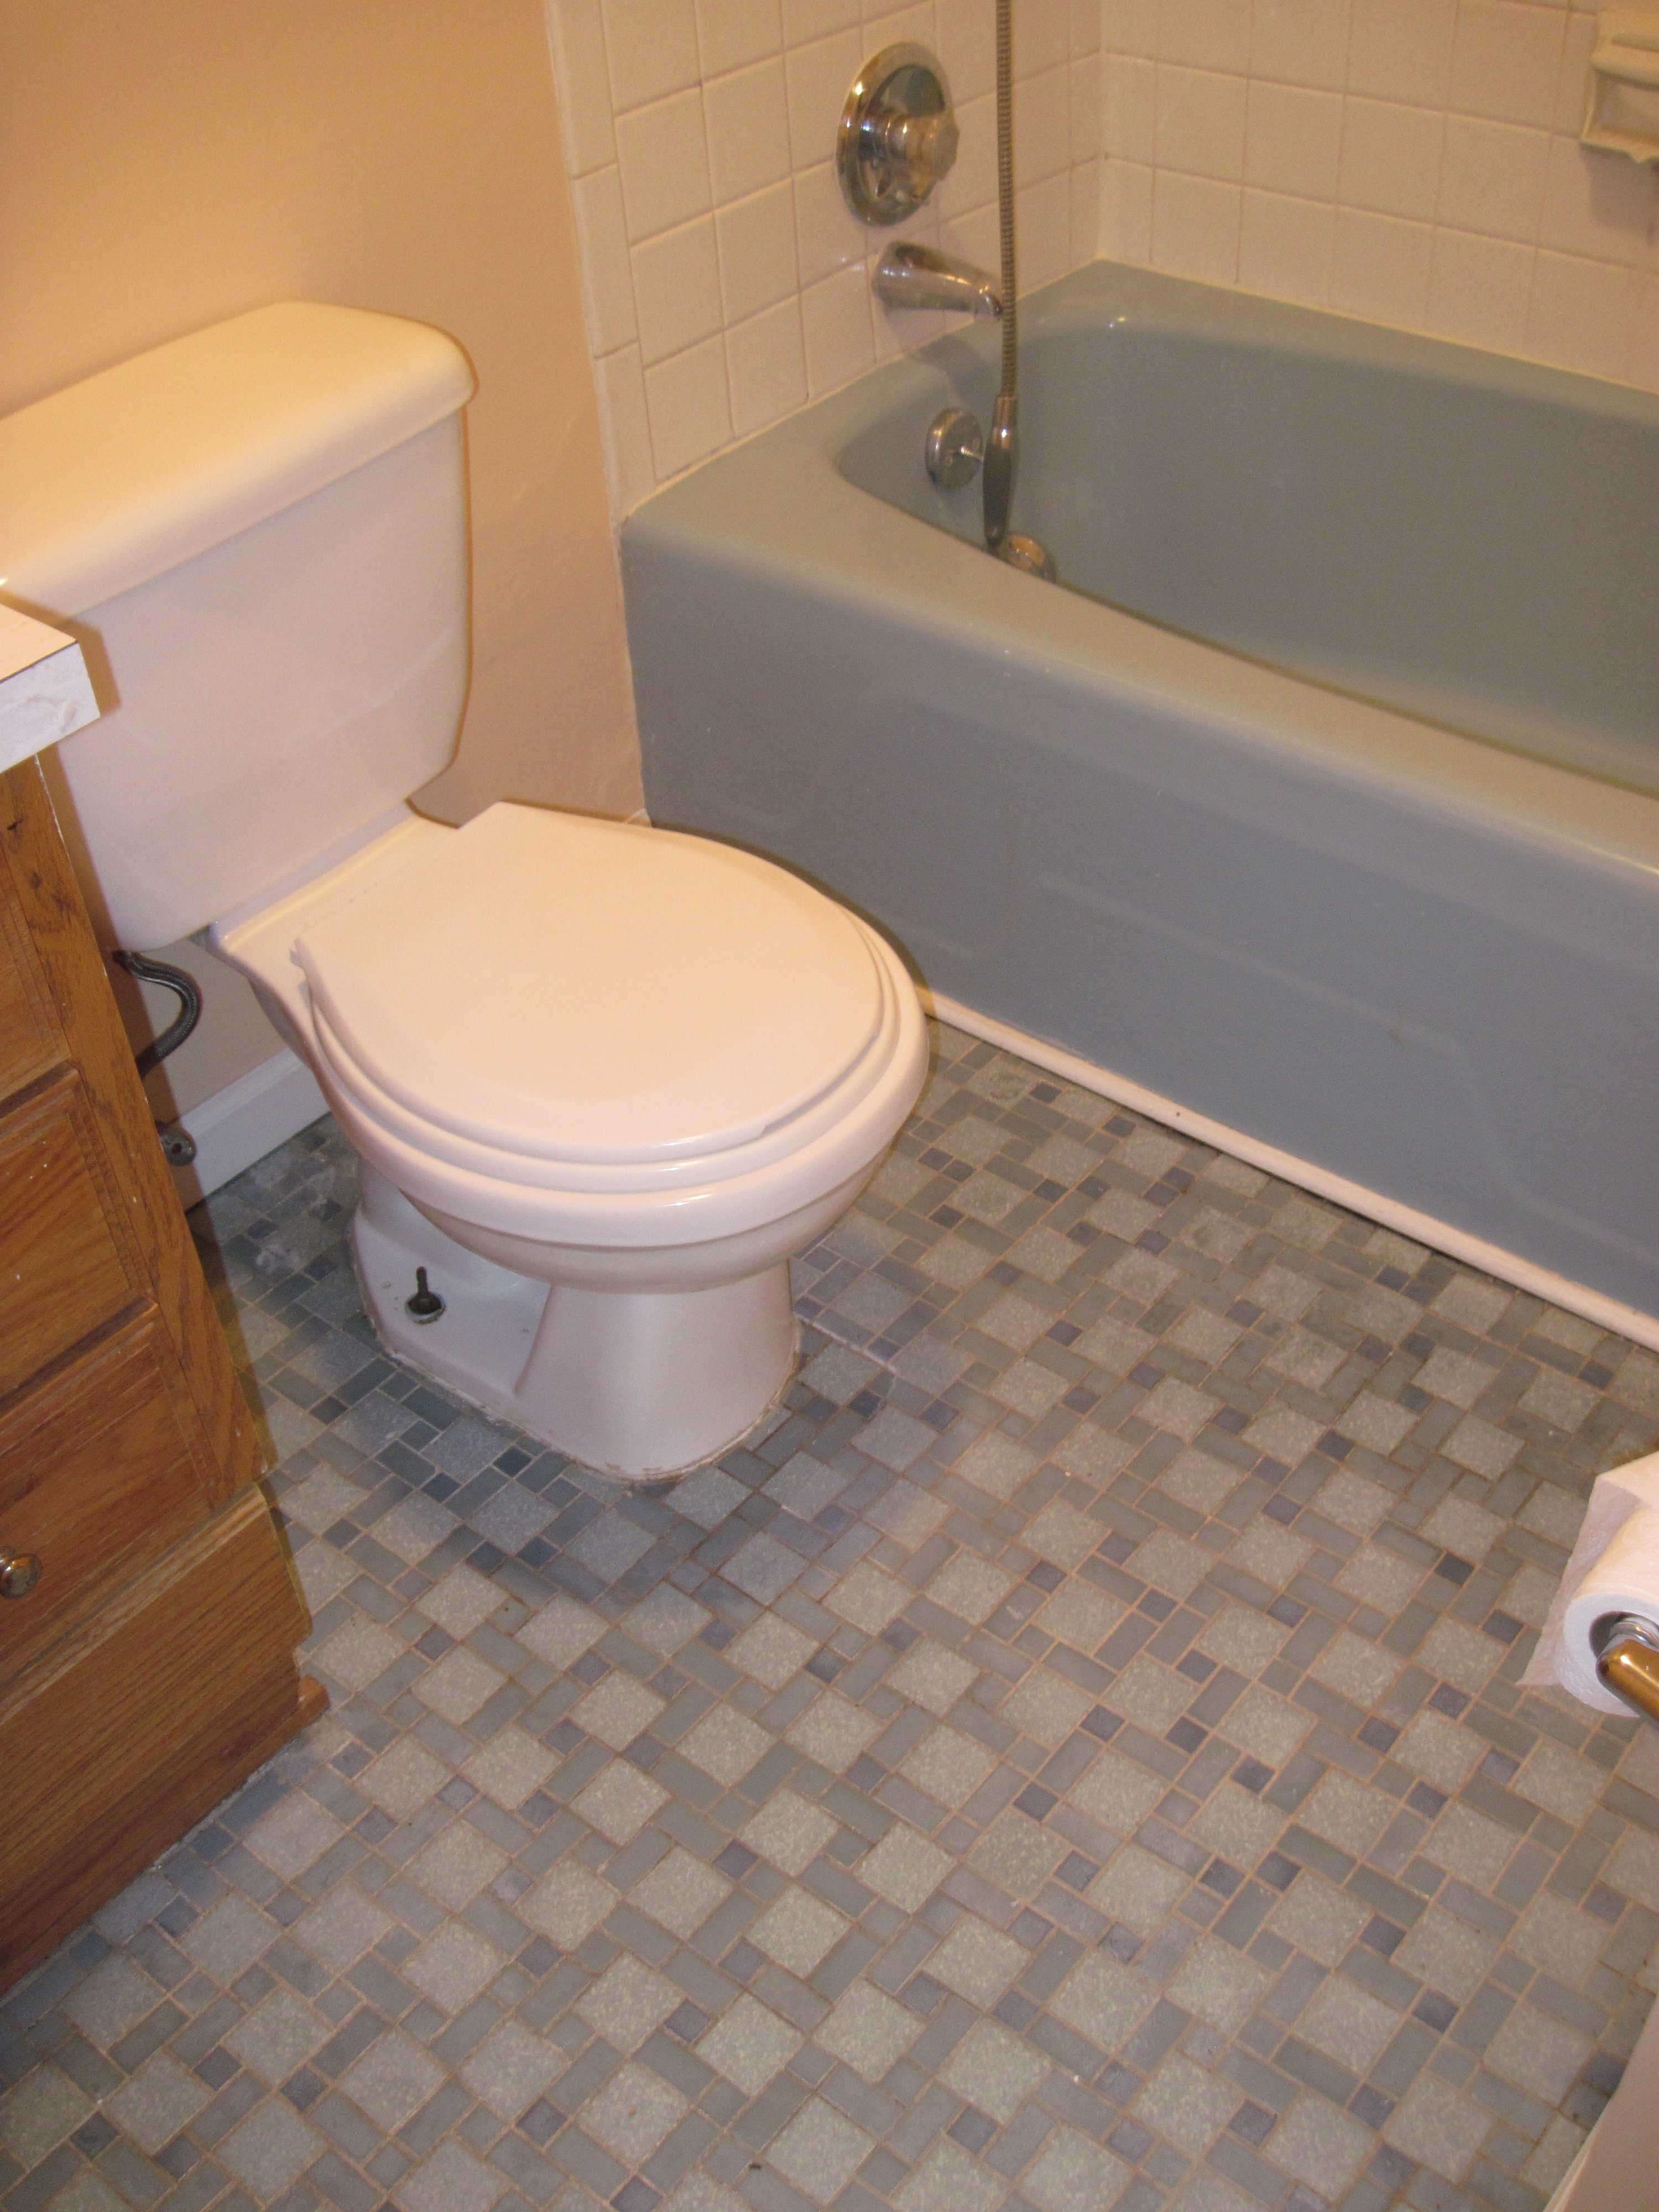 10 Wonderful Small Bathroom Tile Floor Ideas bunch ideas of bathroom floor tile ideas for small bathrooms e280a2 tile 2022